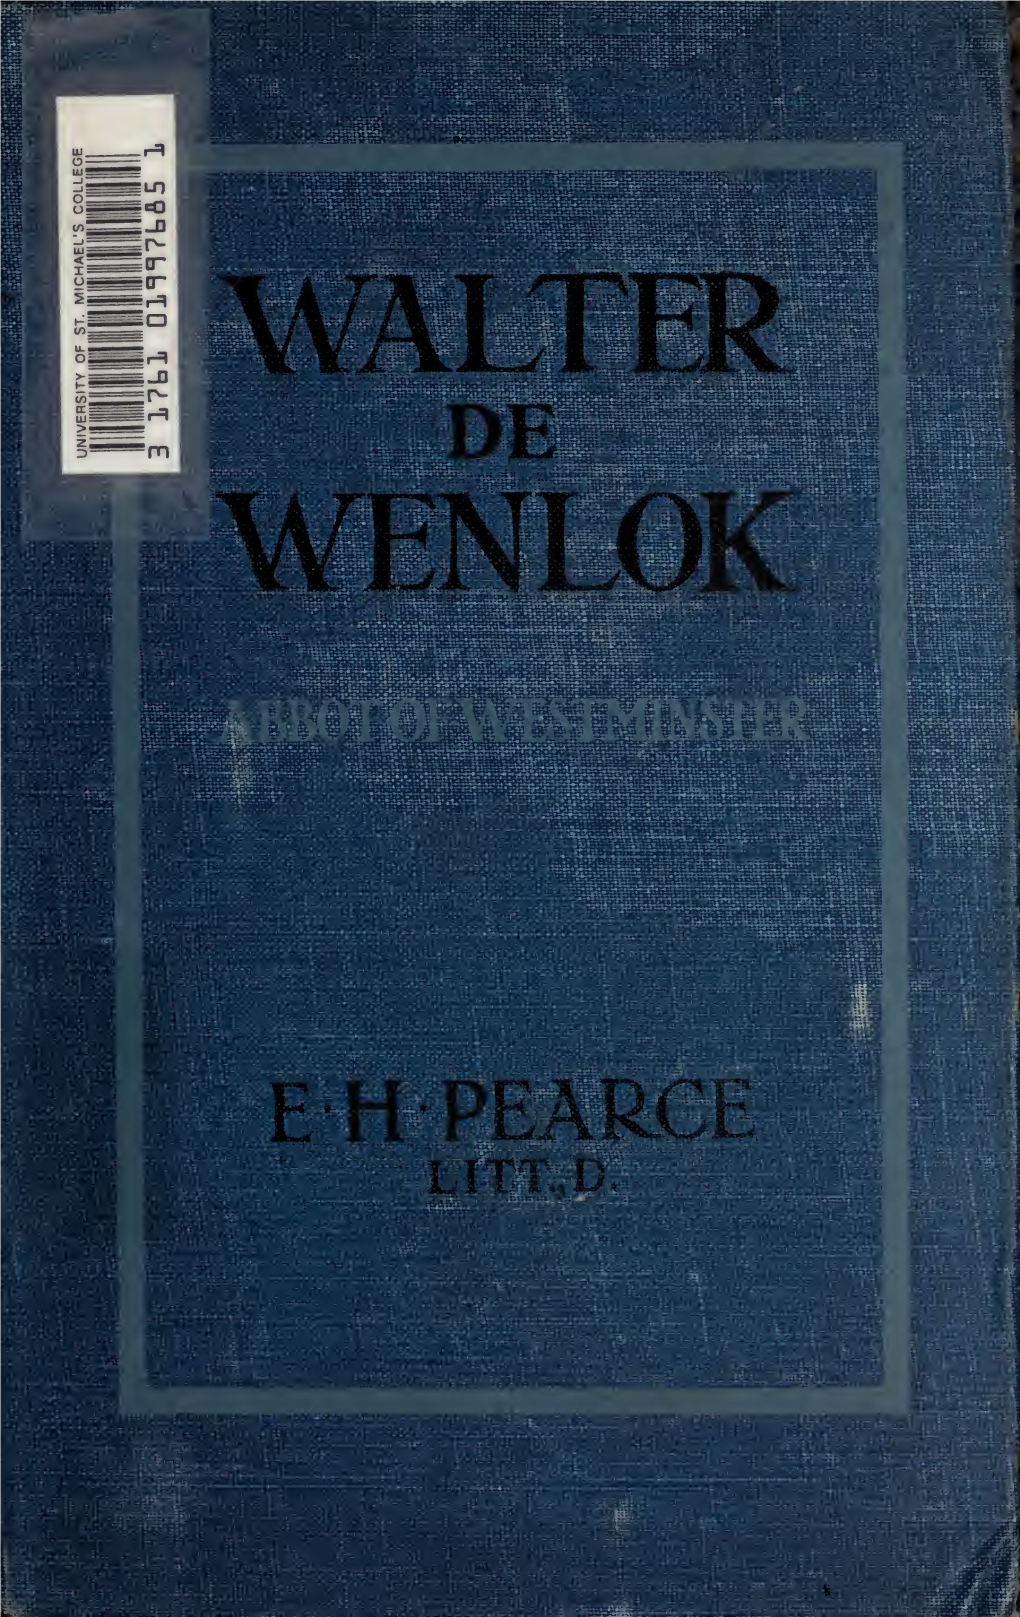 Walter De Wenlok, Abbot of Westminster